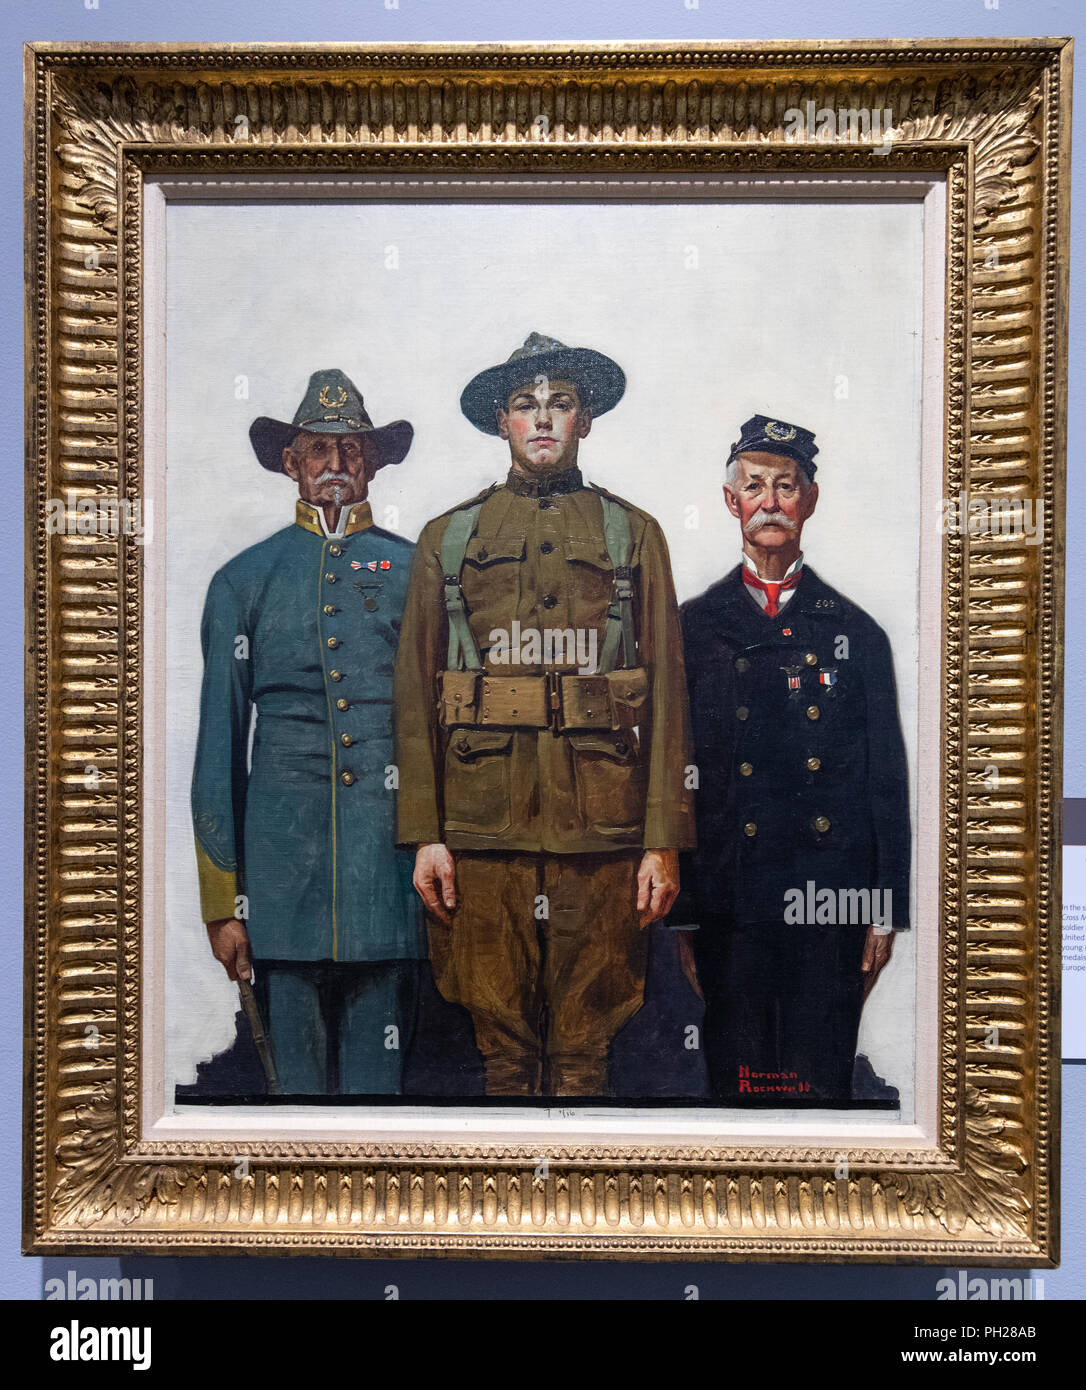 Les anciens combattants des deux guerres, Norman Rockwell Museum, Stockbridge, comté de Berkshire, Massachusetts, USA Banque D'Images